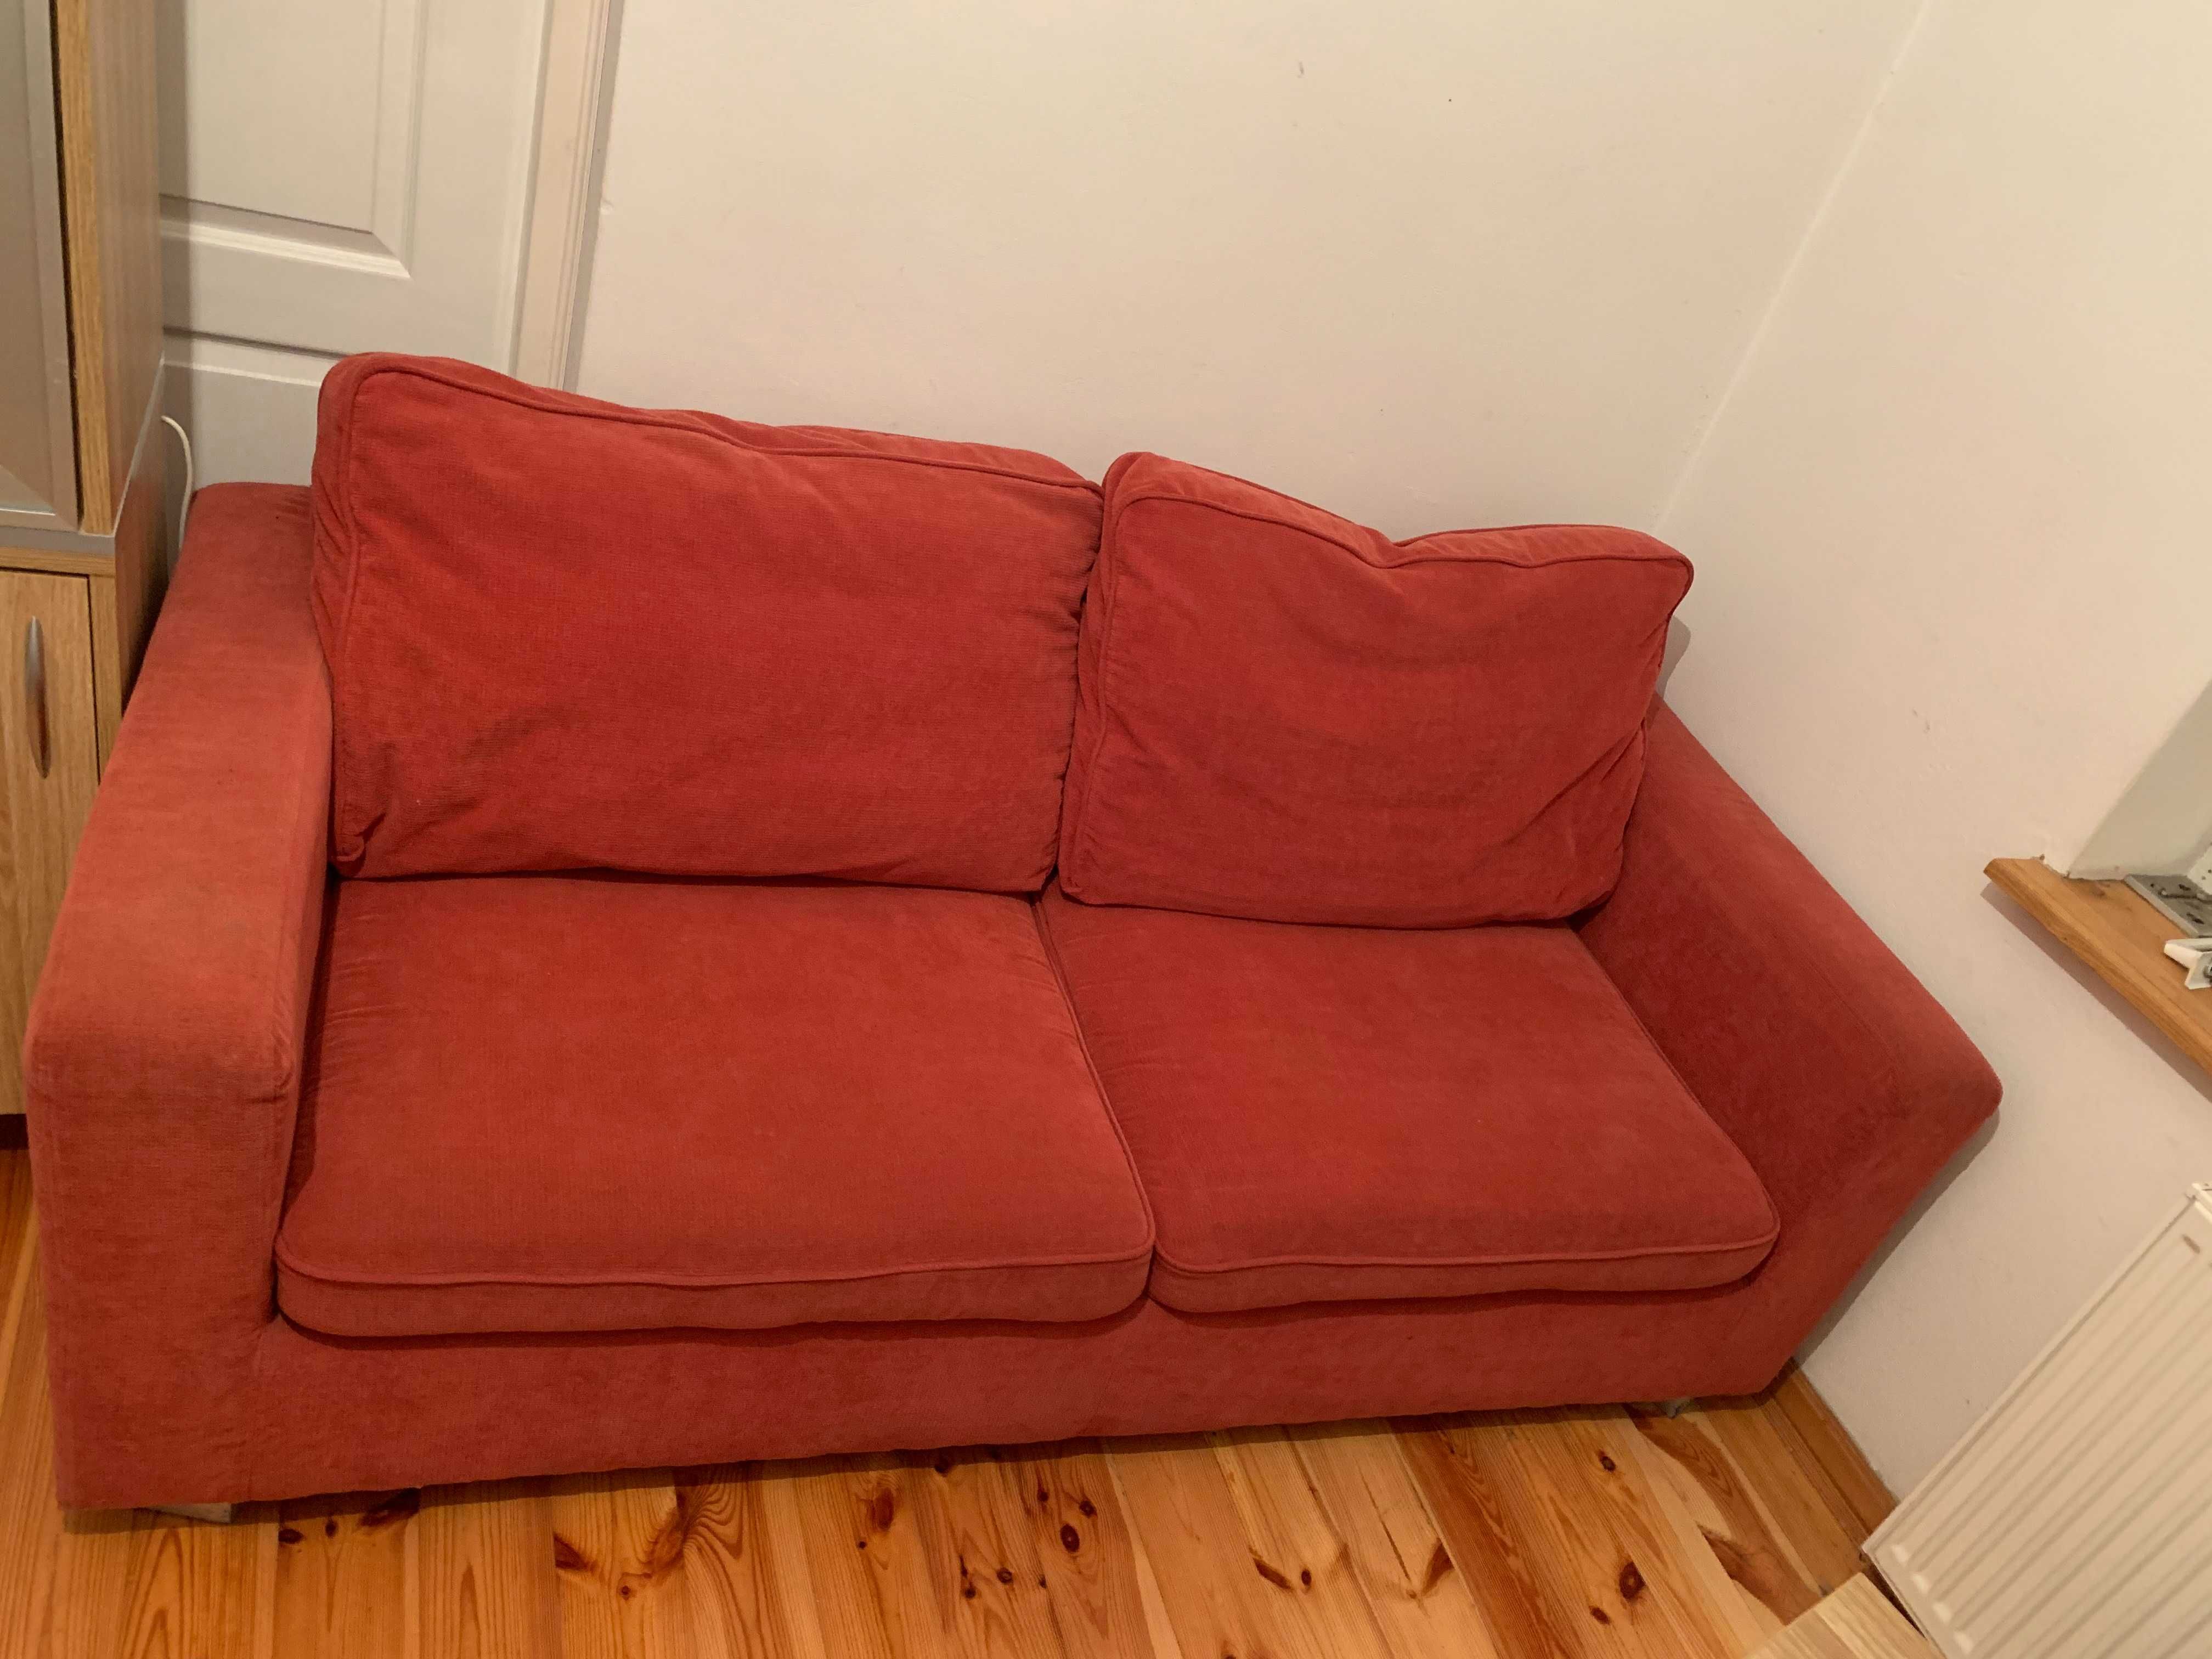 Czerwona kanapa trzyosobowa rozkładana+ dwa czerwone fotele do zestawu